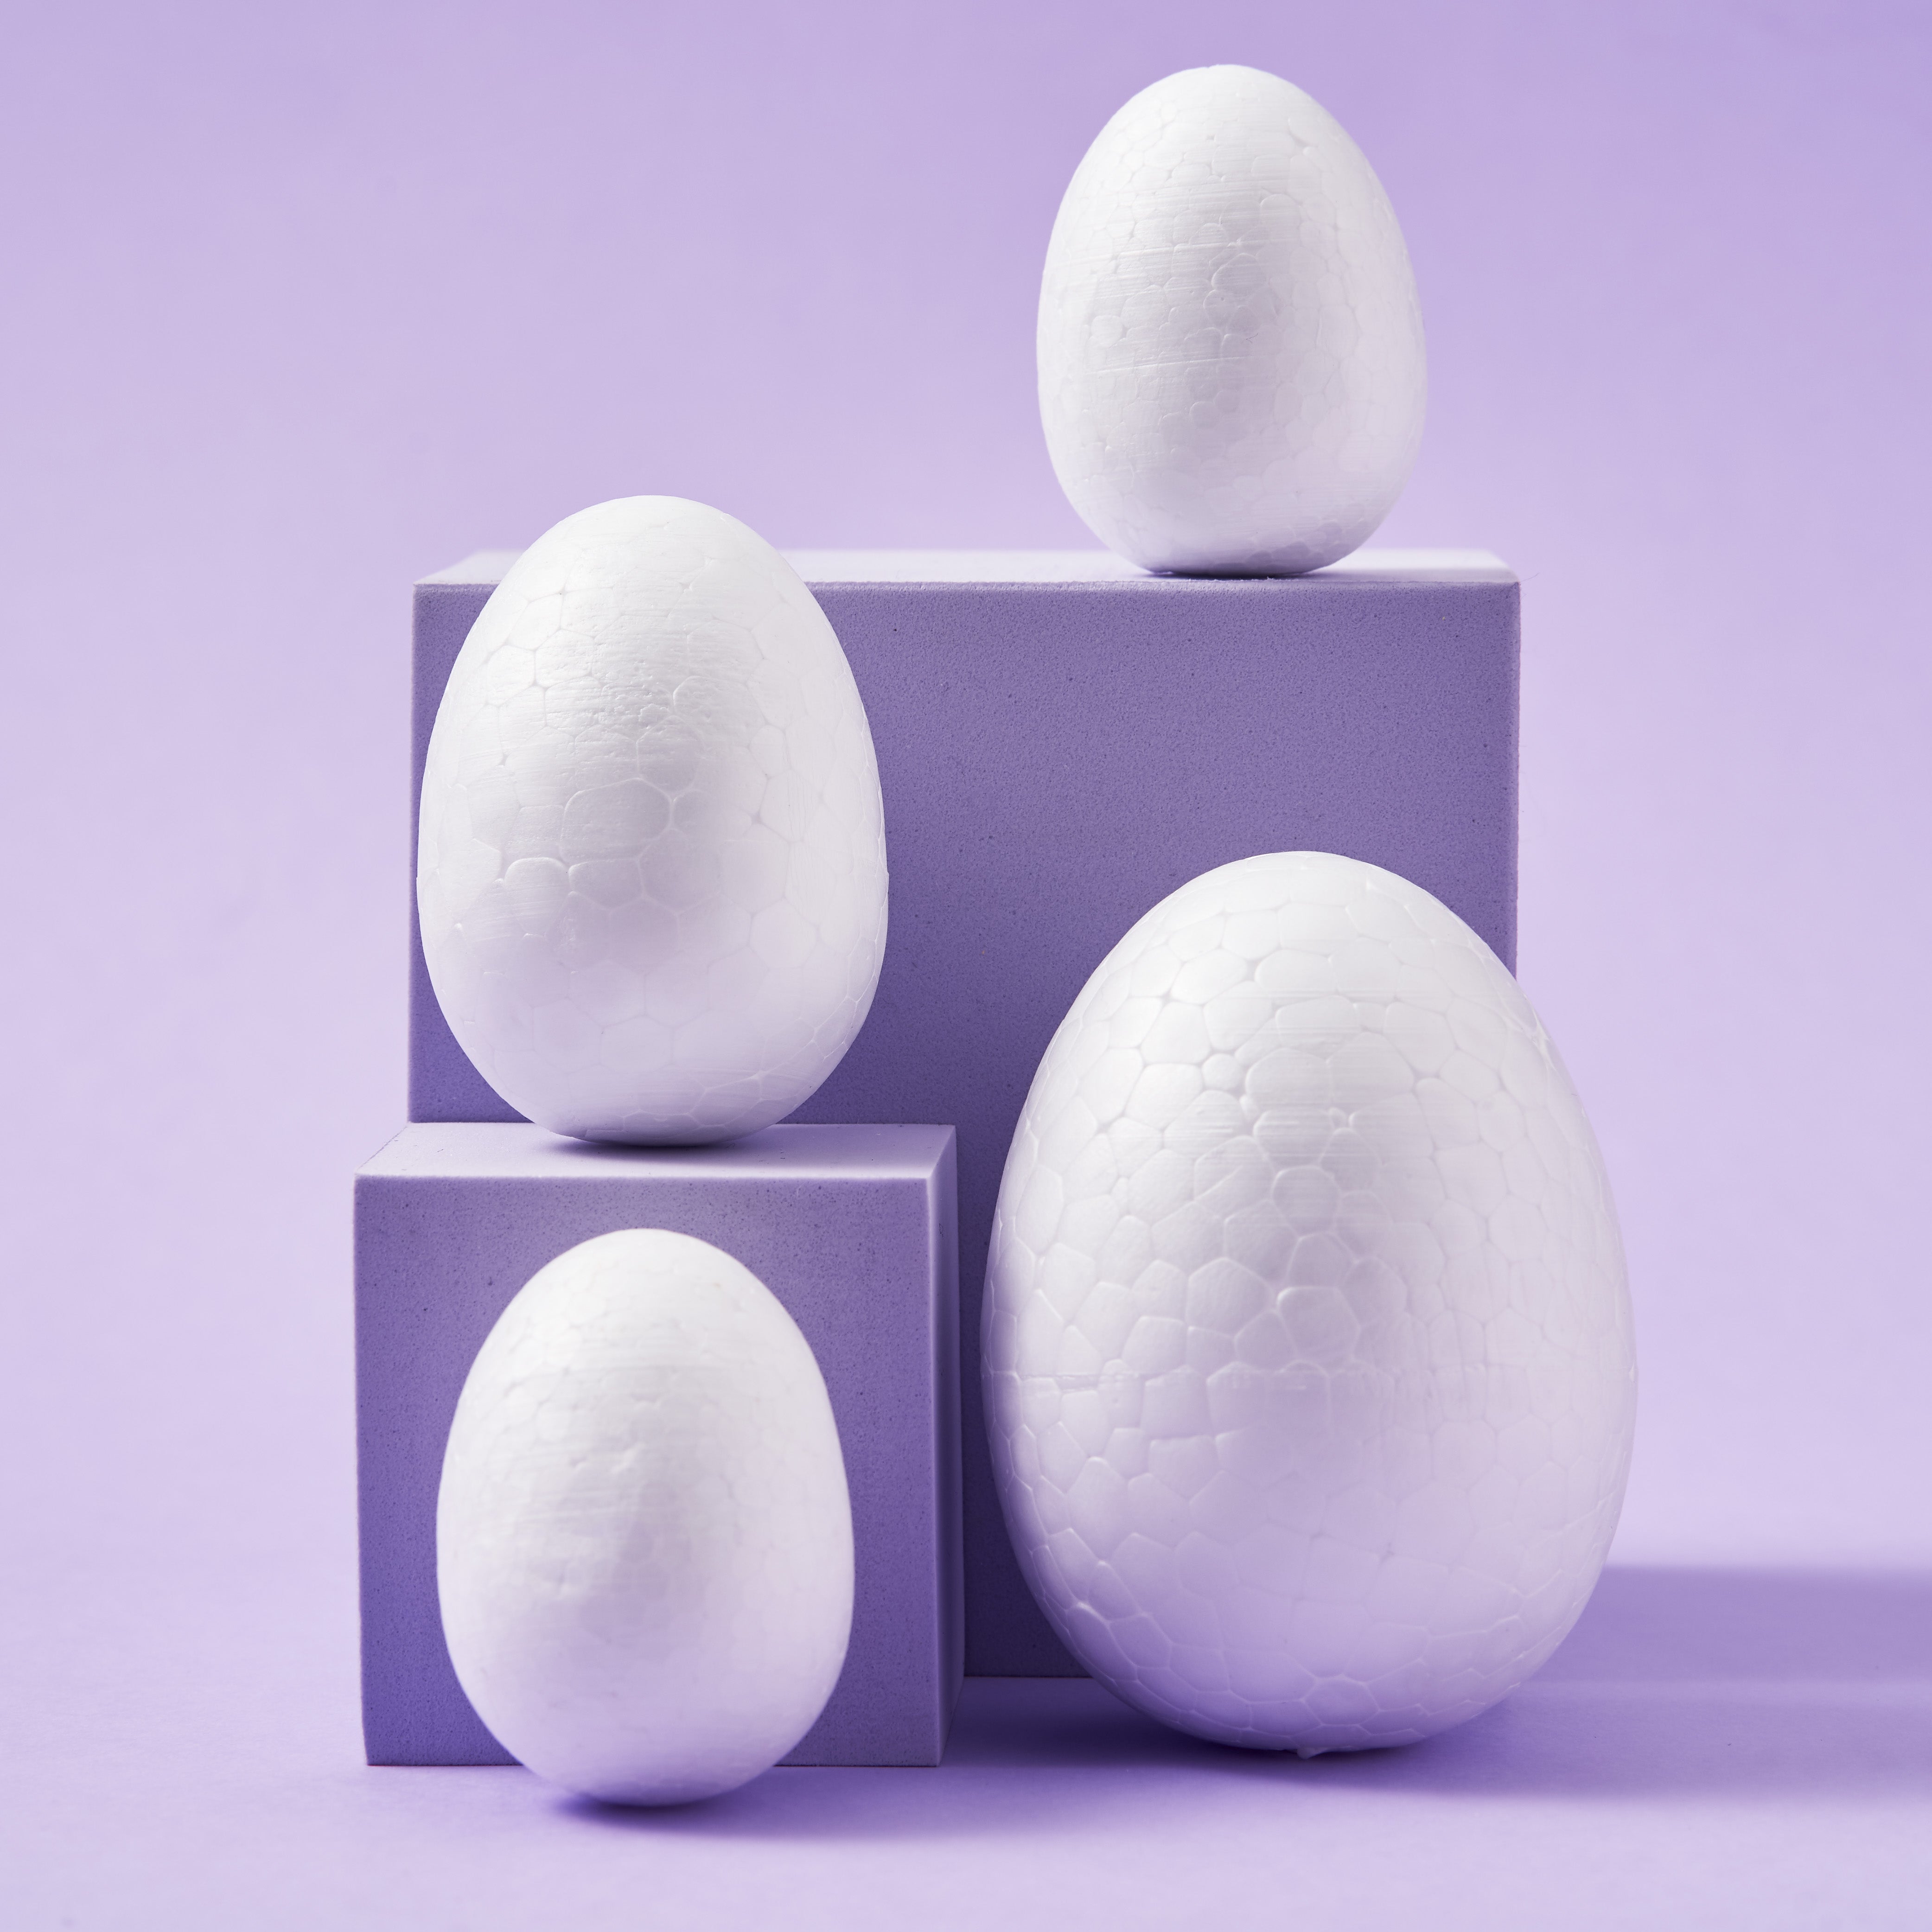 50 Polystyrene Easter Eggs